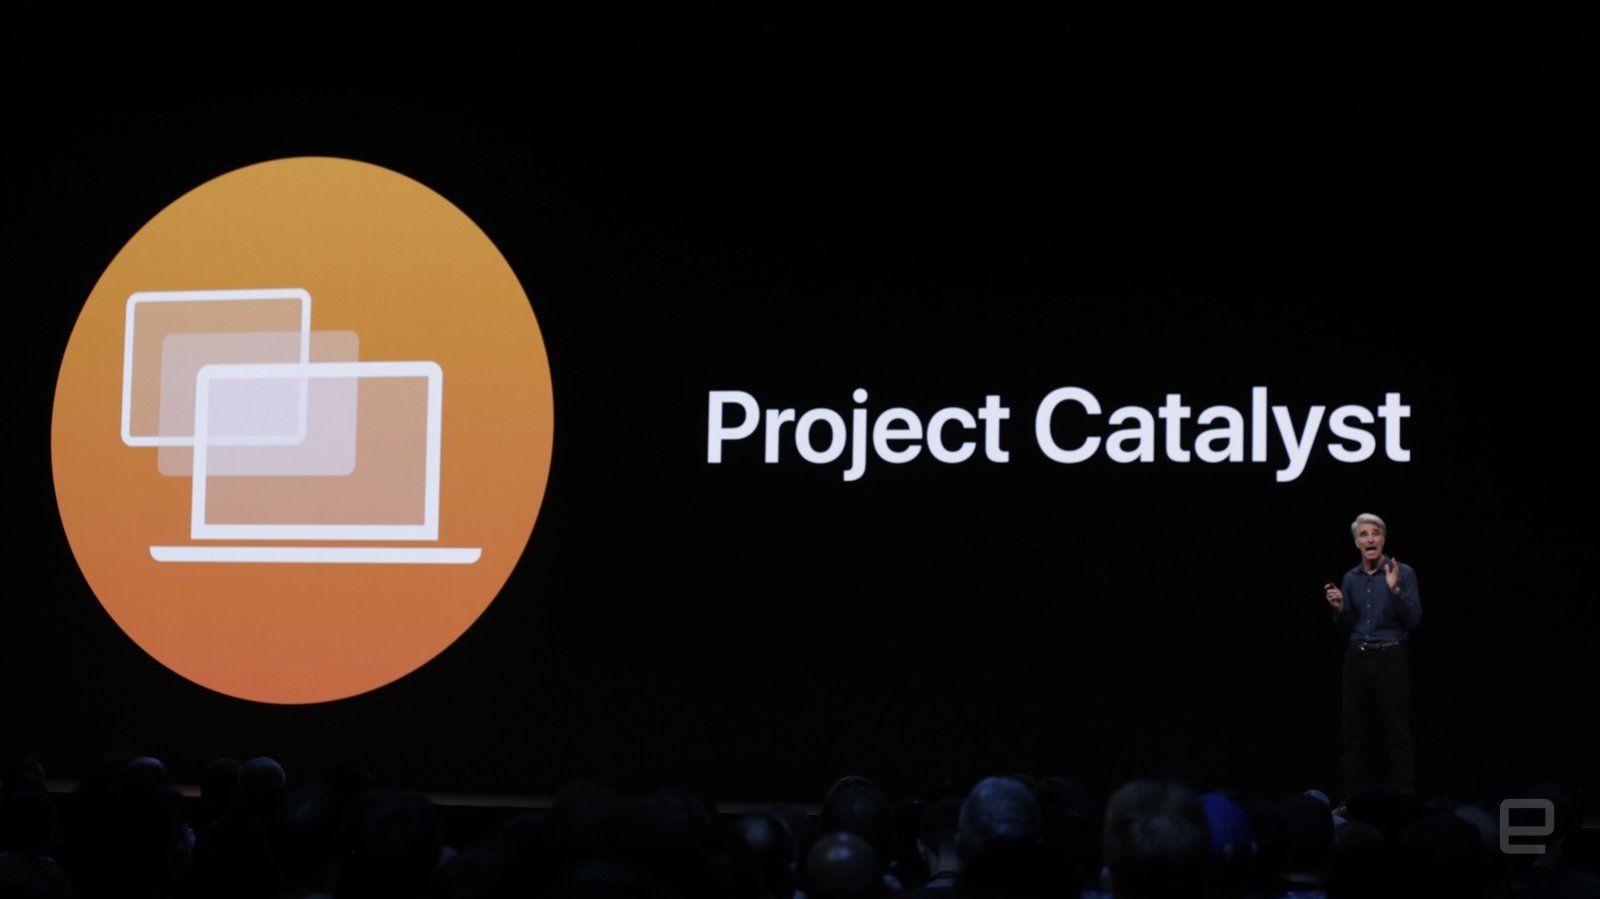 Project Catalystスタッフ「なぜiPadアプリからMac移植なのか」を語る